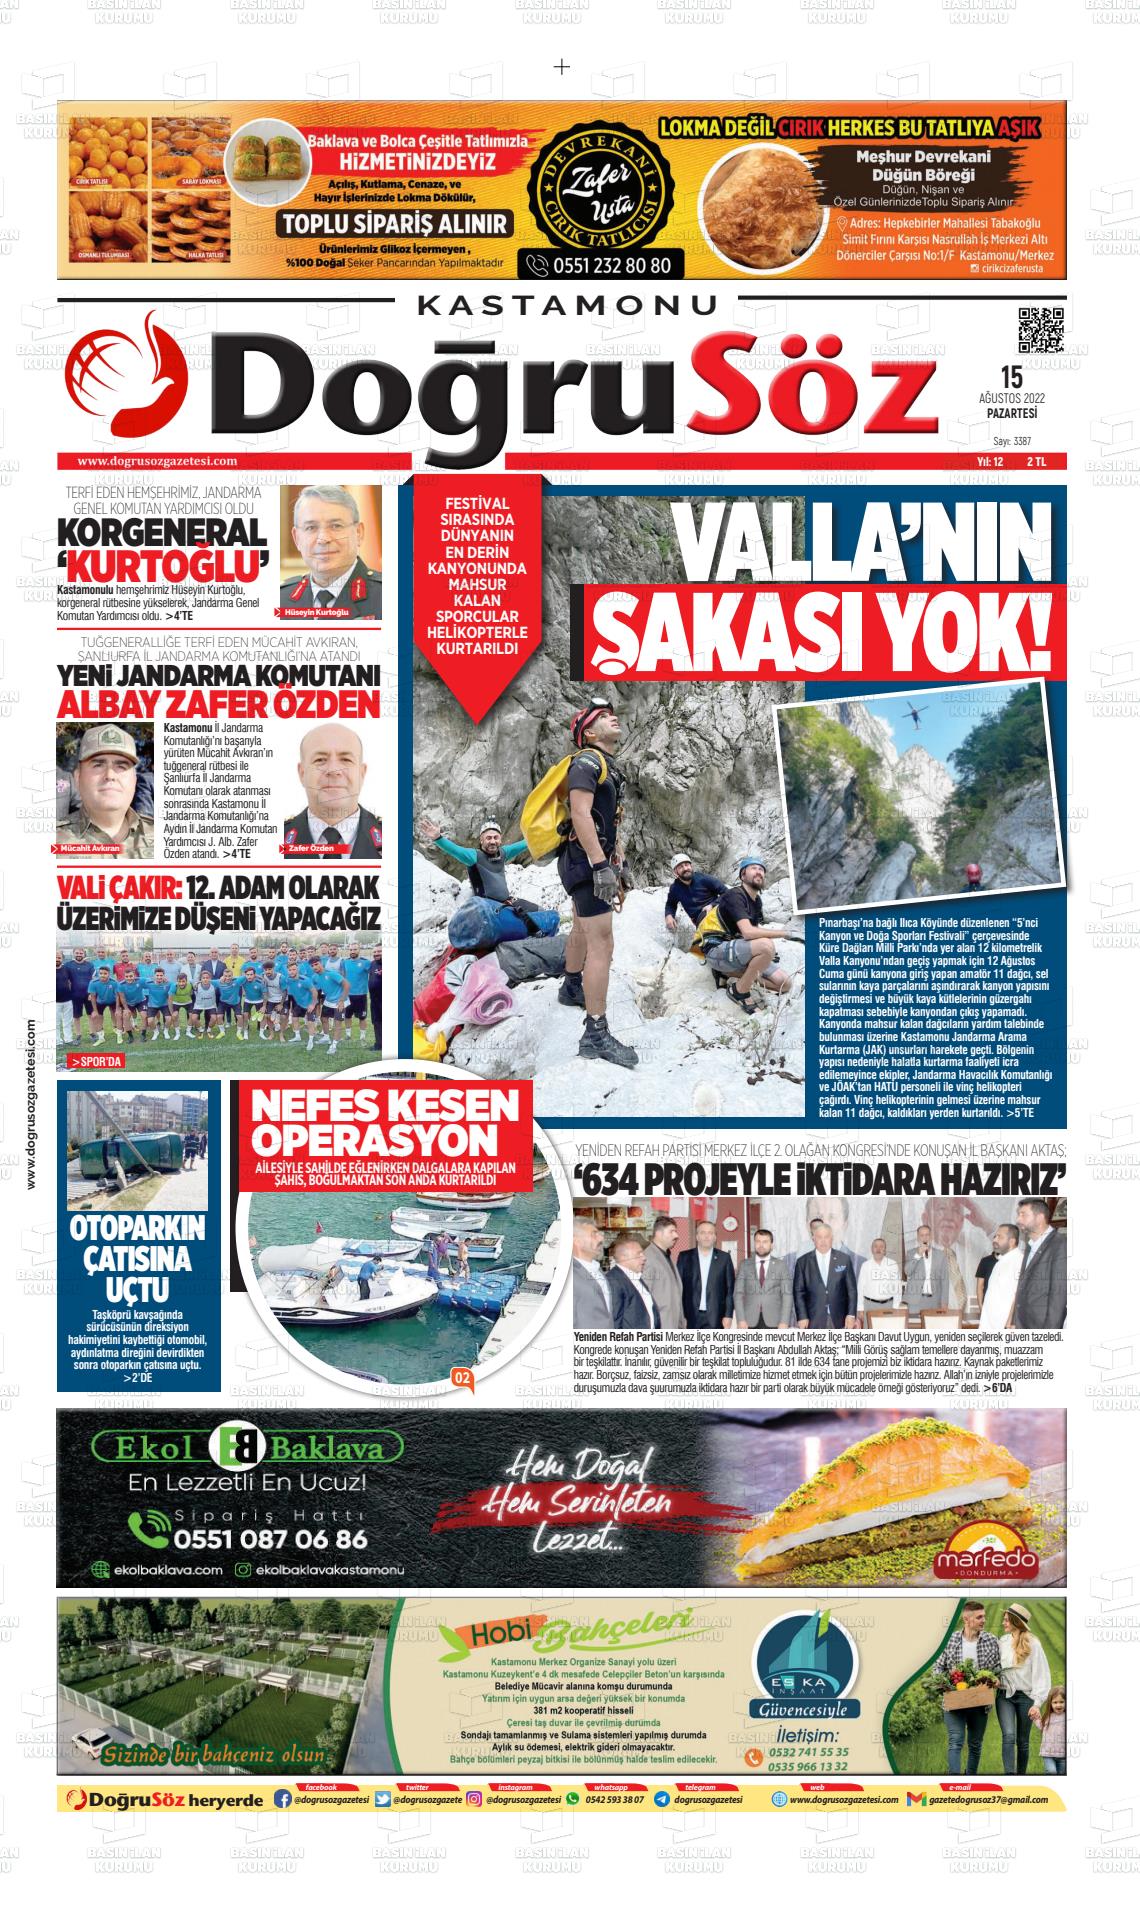 15 Ağustos 2022 Kastamonu Doğrusöz Gazete Manşeti